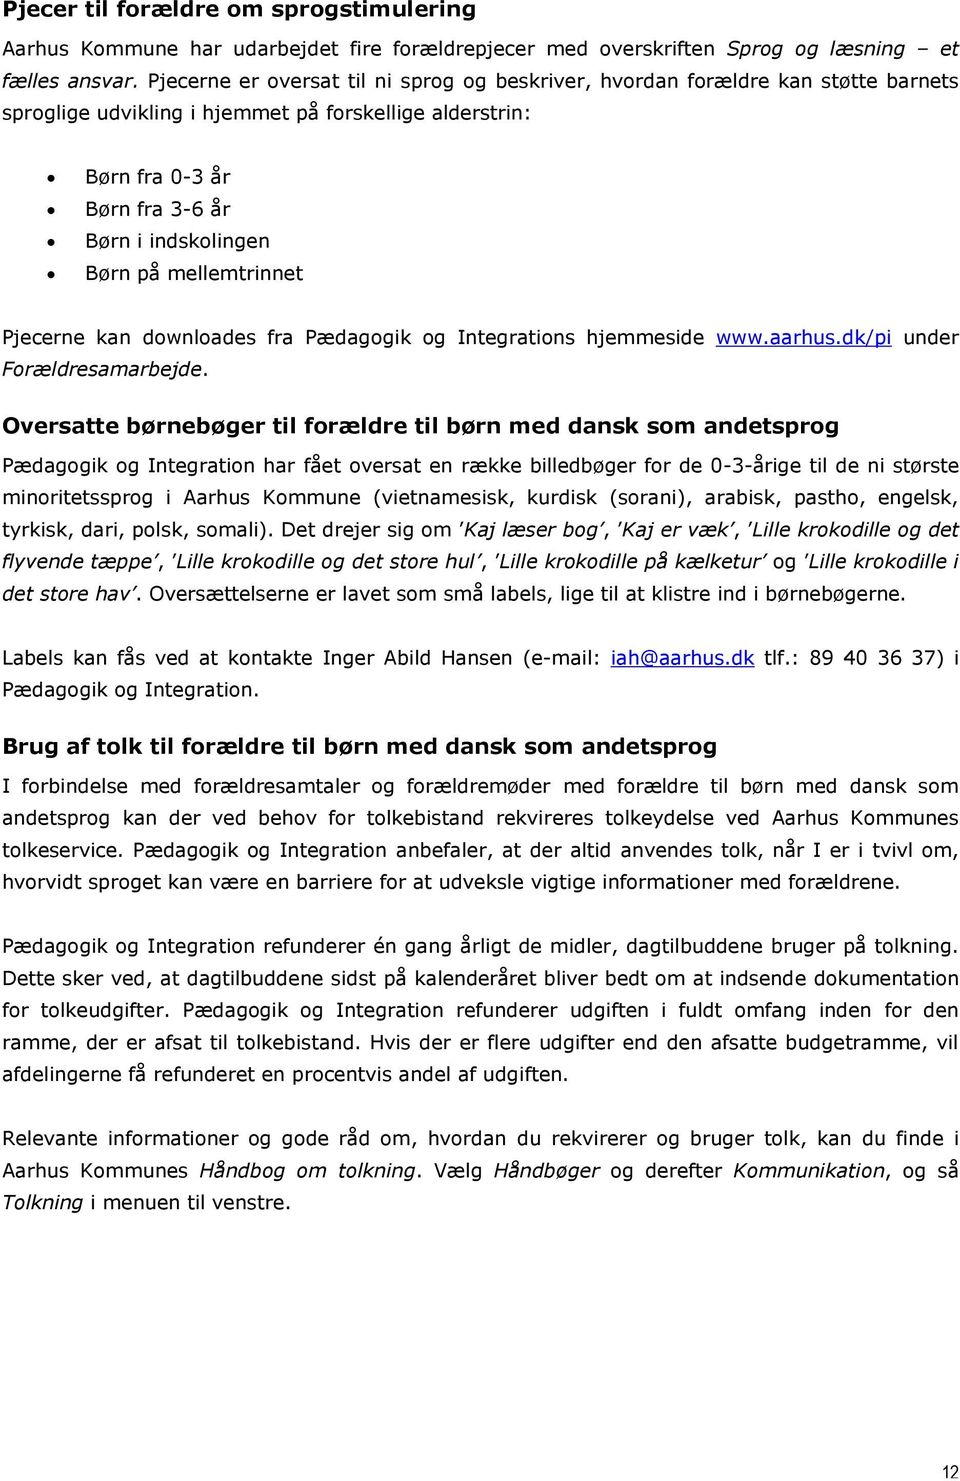 mellemtrinnet Pjecerne kan downloades fra Pædagogik og Integrations hjemmeside www.aarhus.dk/pi under Forældresamarbejde.